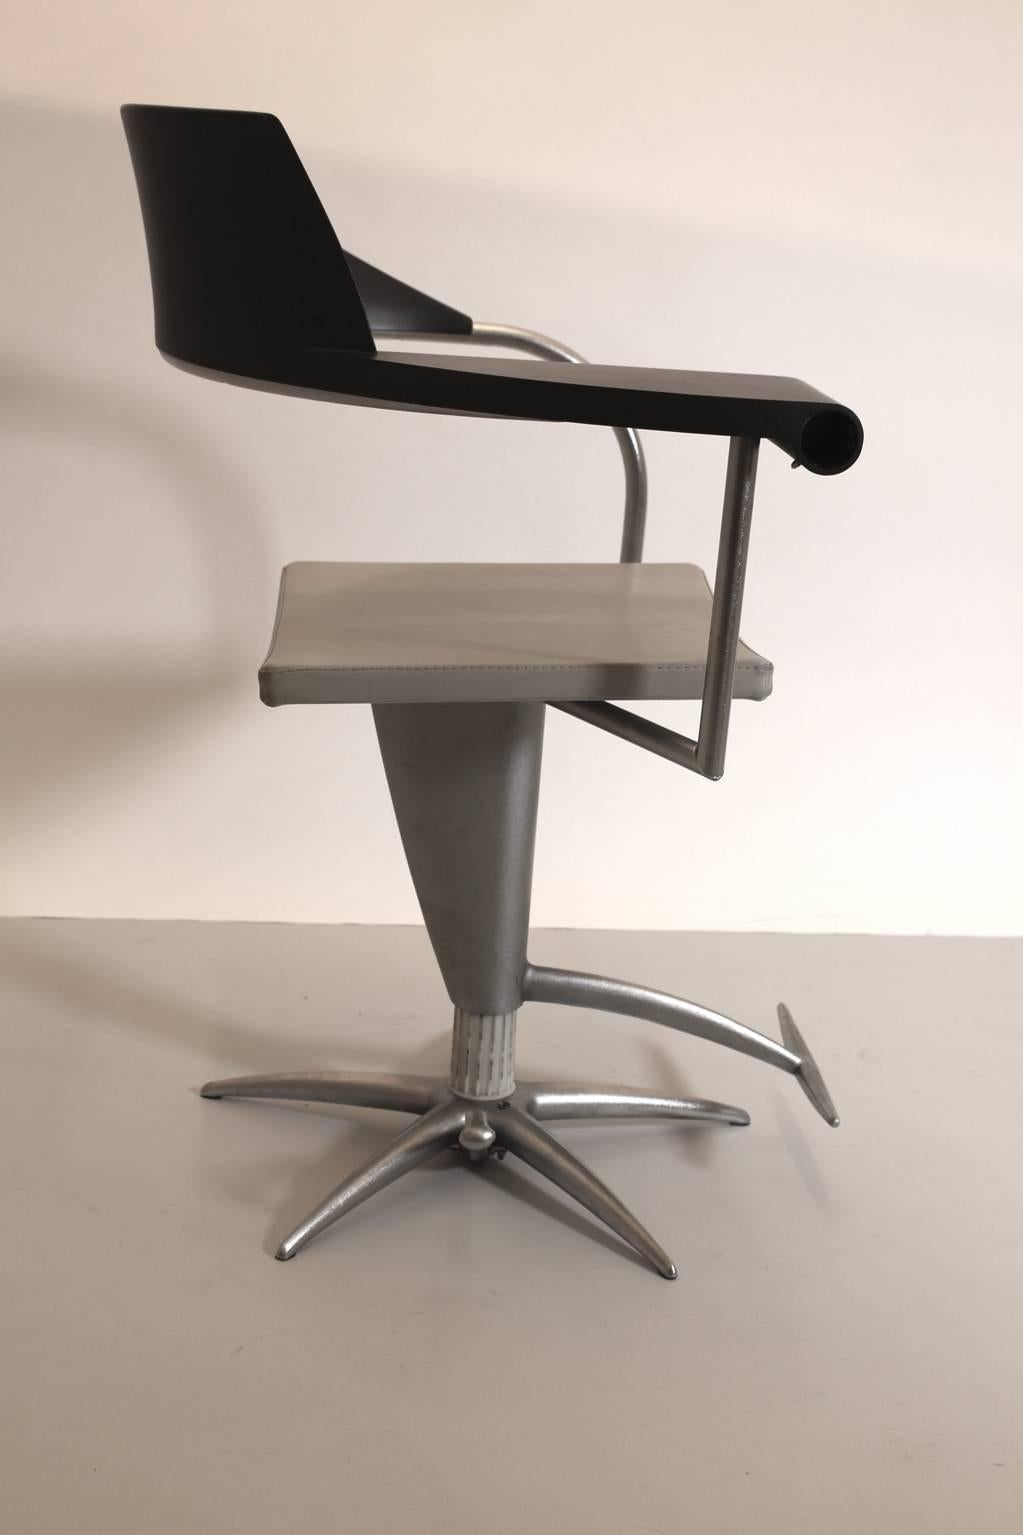 Fauteuil ou chaise de bureau vintage postmoderne en plastique, aluminium et acier en noir et argent par Philippe Starck 1980. 
Les accoudoirs incurvés se fondent dans le siège et on y trouve un cendrier caché.
Ce fauteuil était probablement utilisé